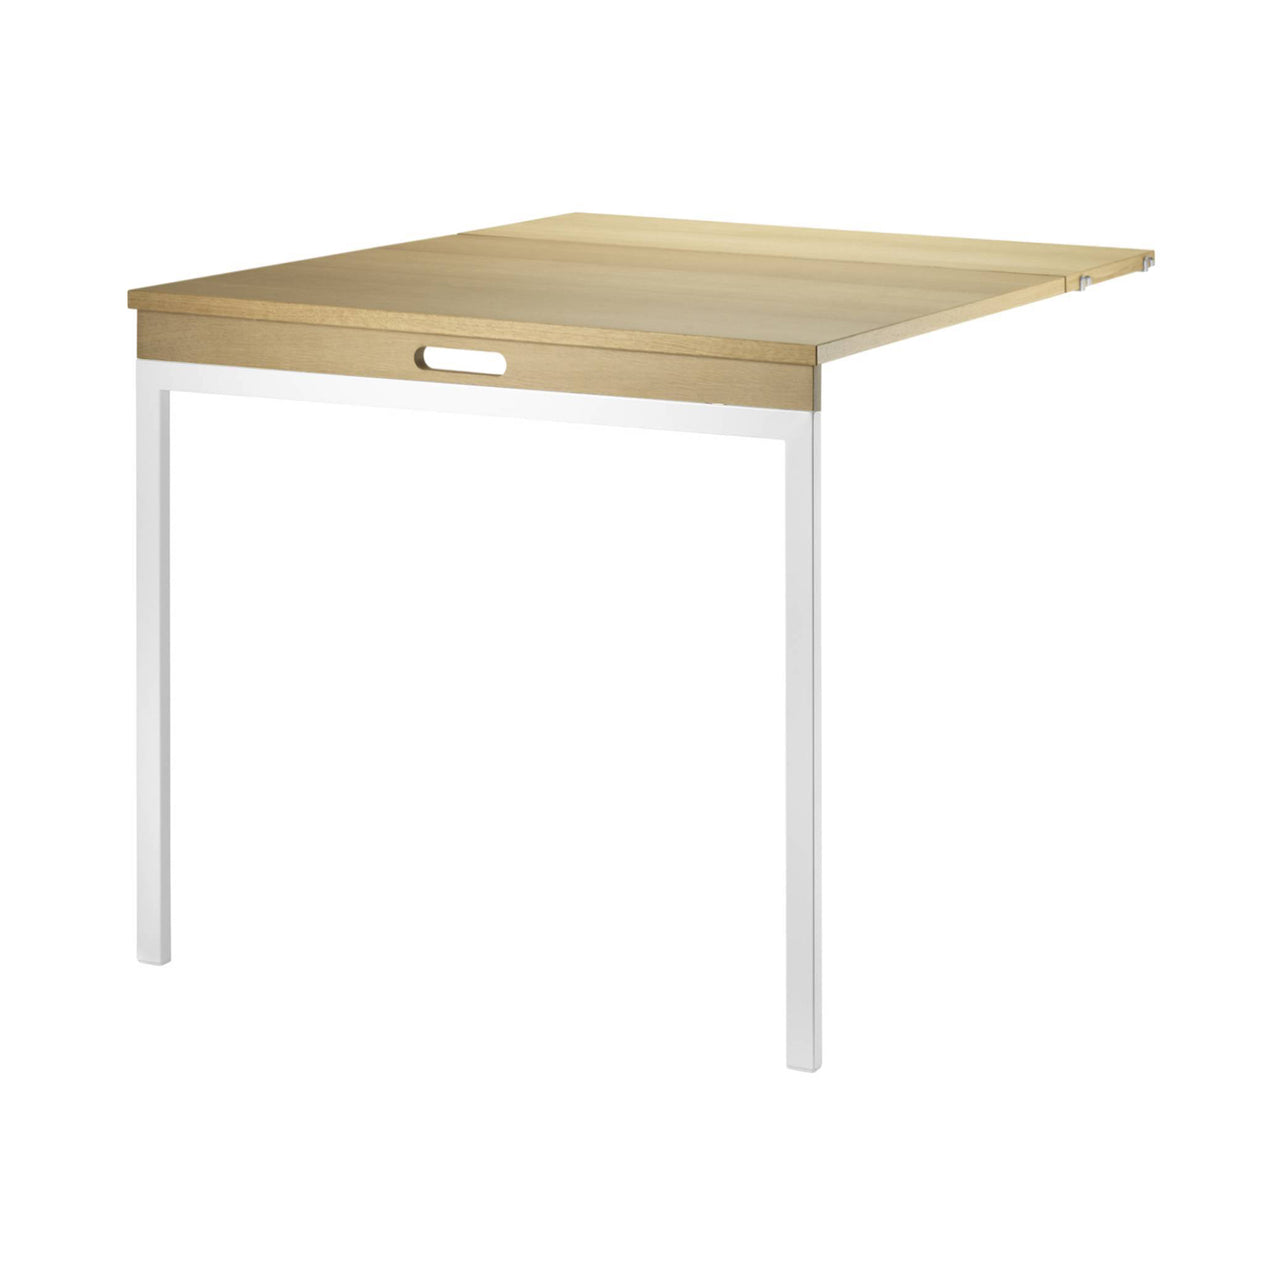 String Shelving System: Folding Table + Oak + White